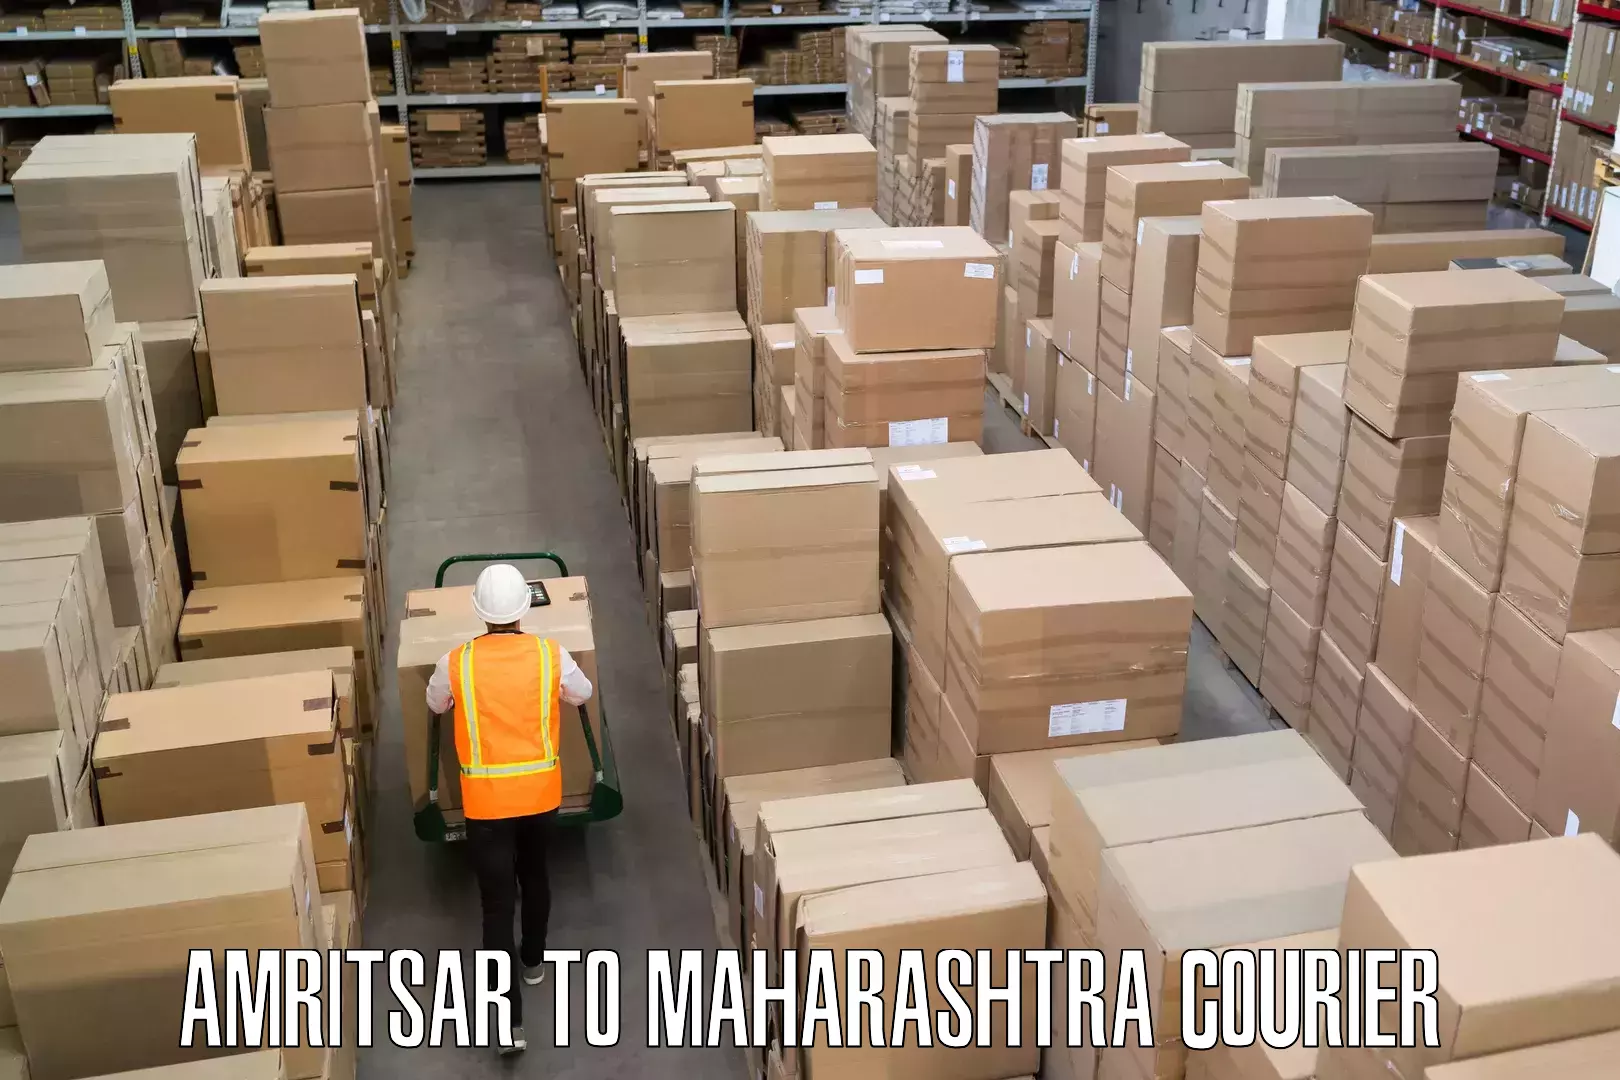 Luggage transport consulting Amritsar to Maharashtra